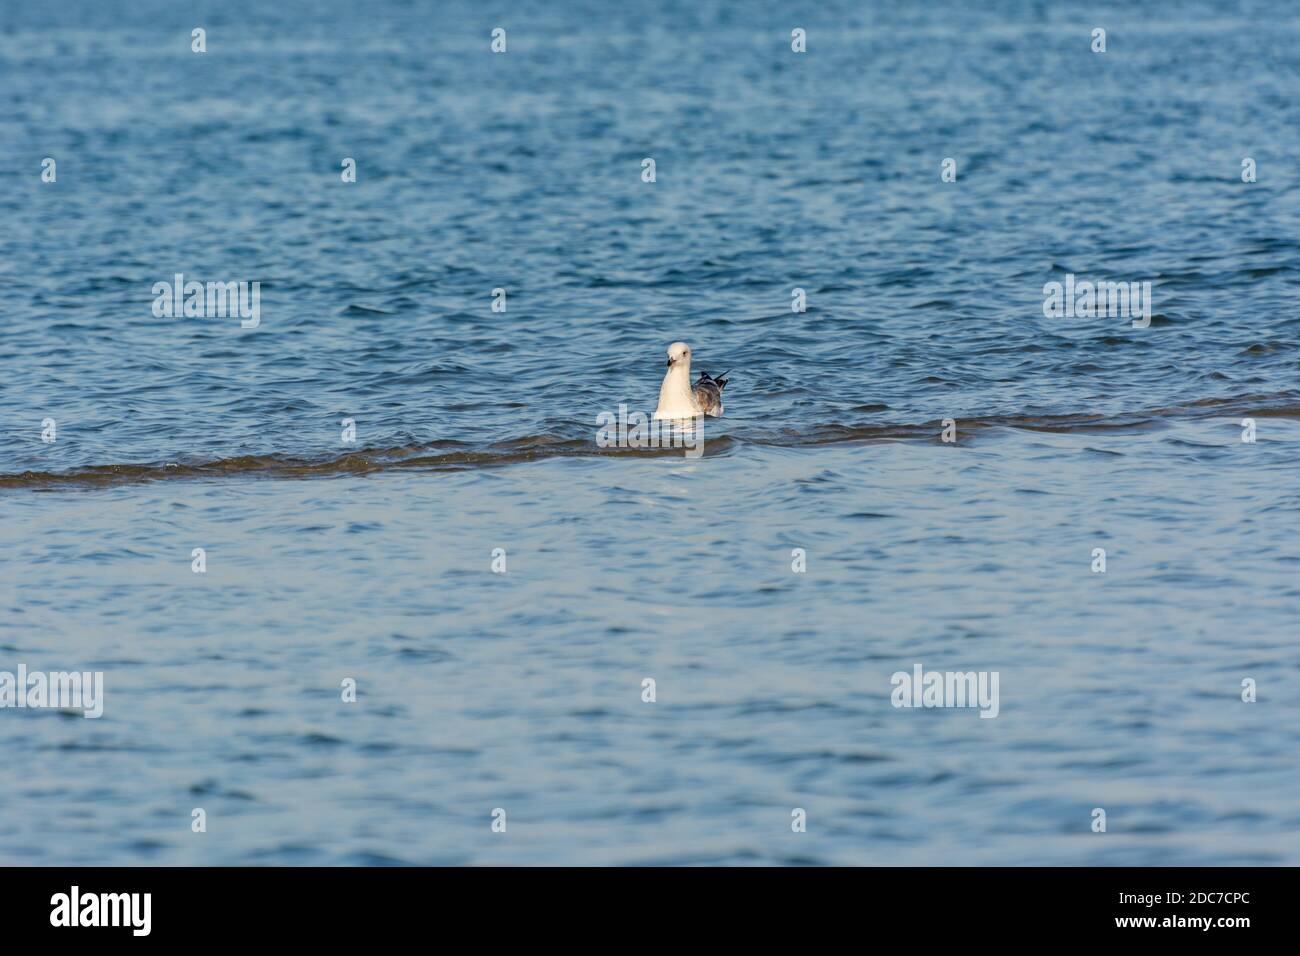 A seagull swimming in the sea in Dammam, Kingdom of Saudi Arabia Stock Photo